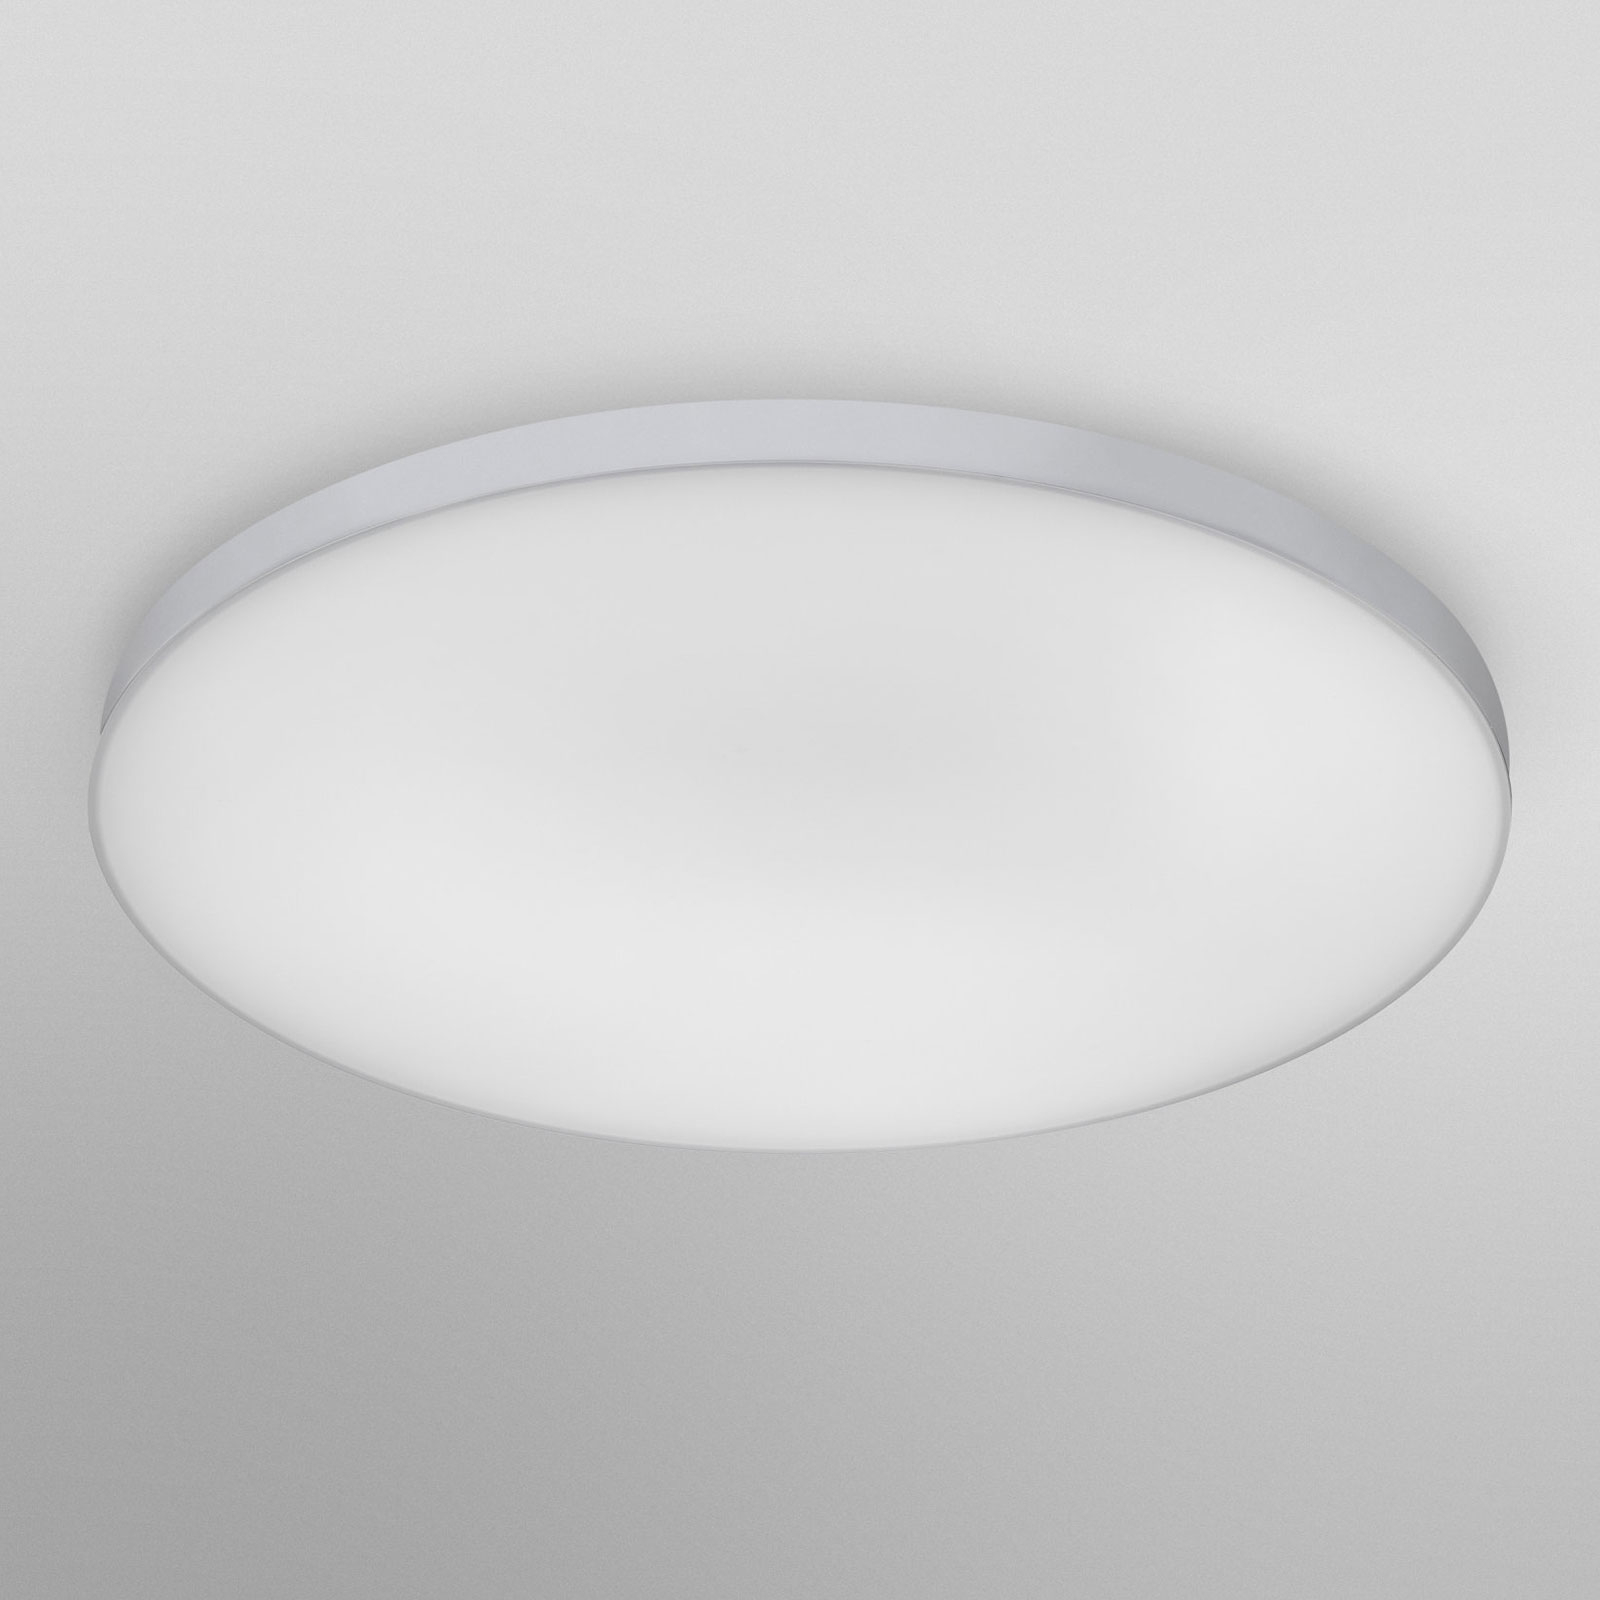 LEDVANCE SMART+ WiFi Planon LED panel CCT Ø 45 cm